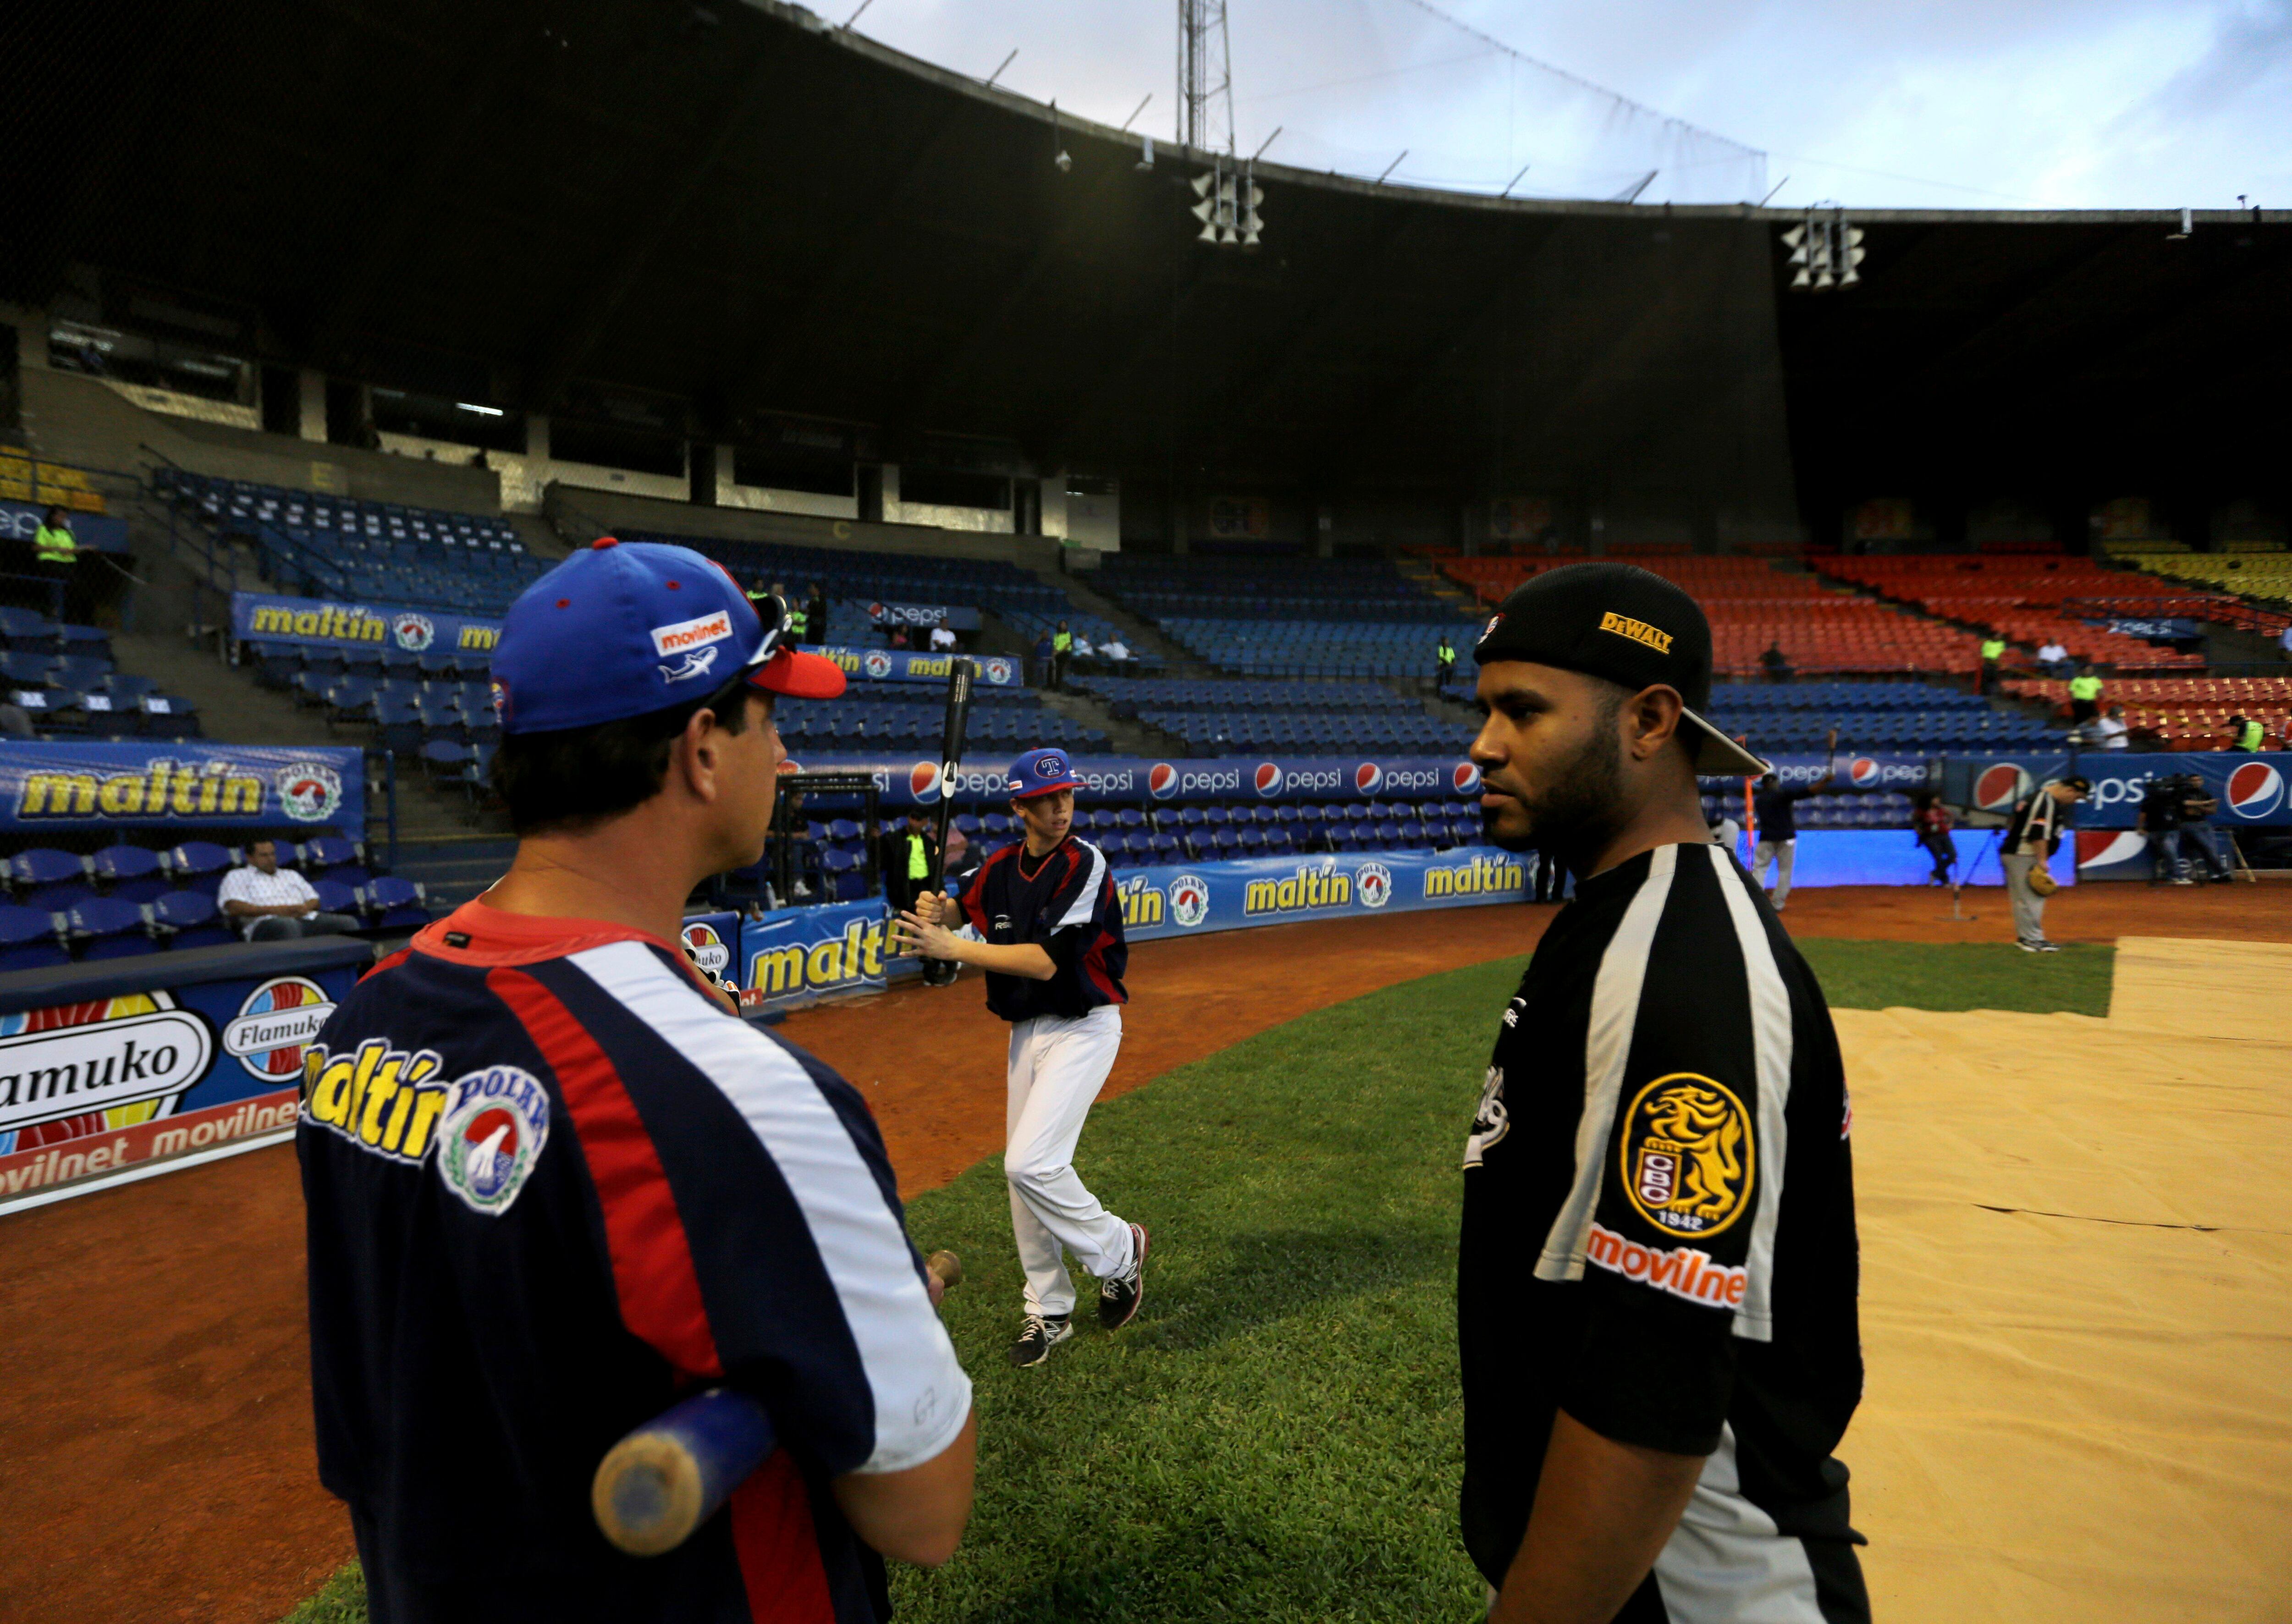 Help us bring 15 Venezuelan kids to play baseball - GlobalGiving